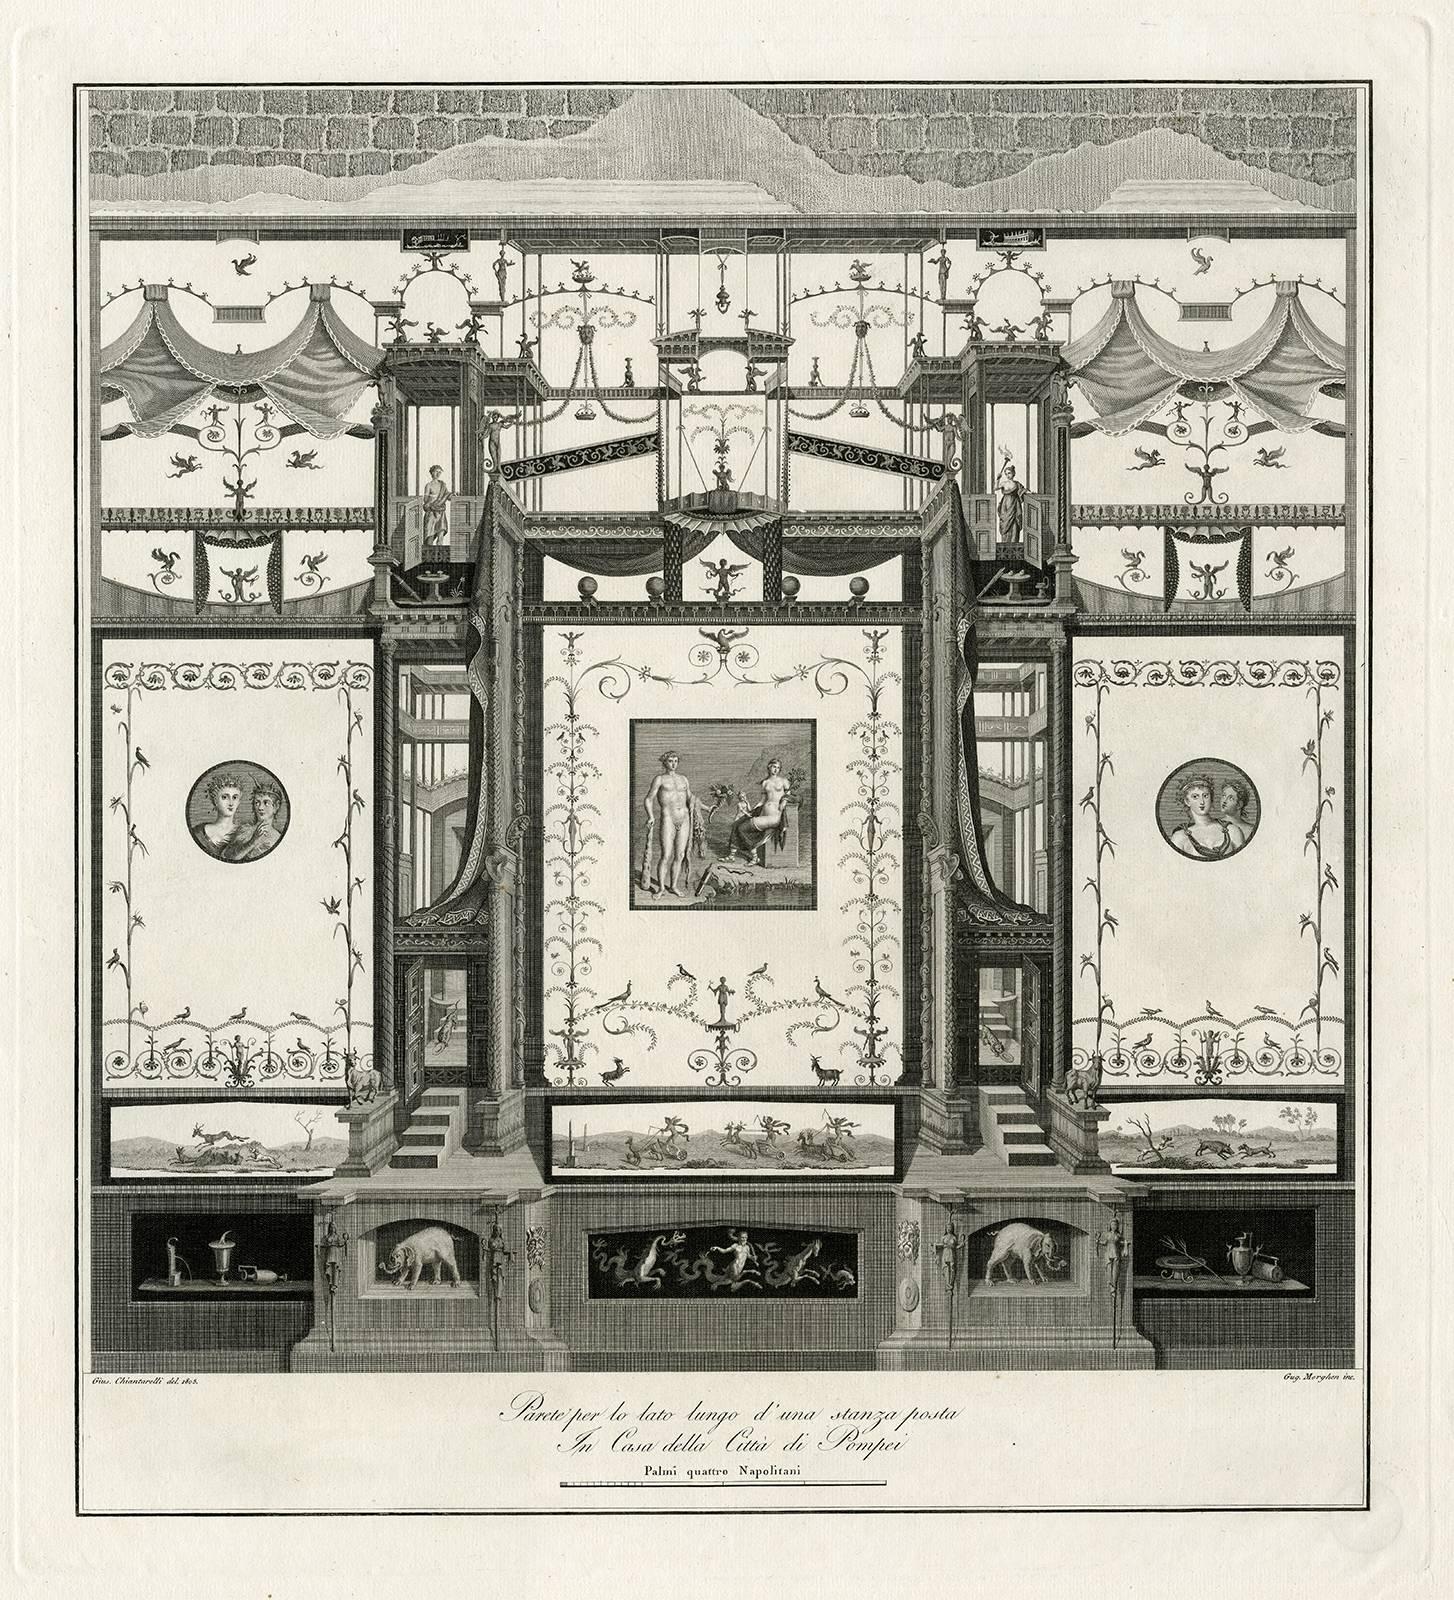 Guglielmo Morghen Interior Print - Parete per lo lato lungo d'una stanza posta.